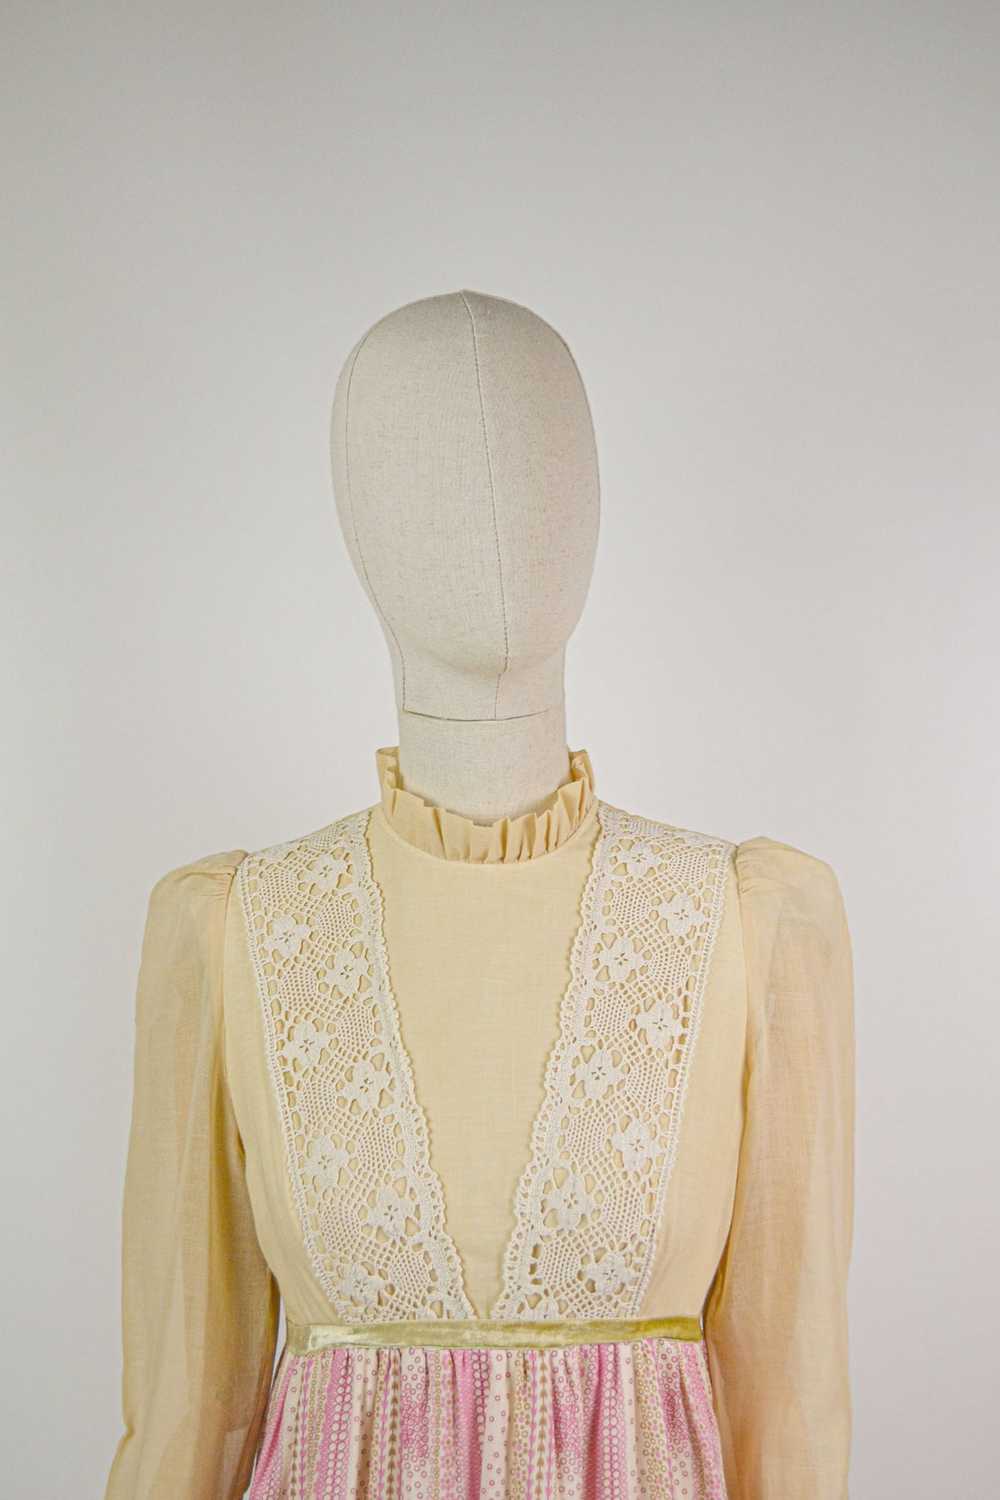 QUAINT - 1970s Vintage Angela Gore Prairie Dress … - image 5